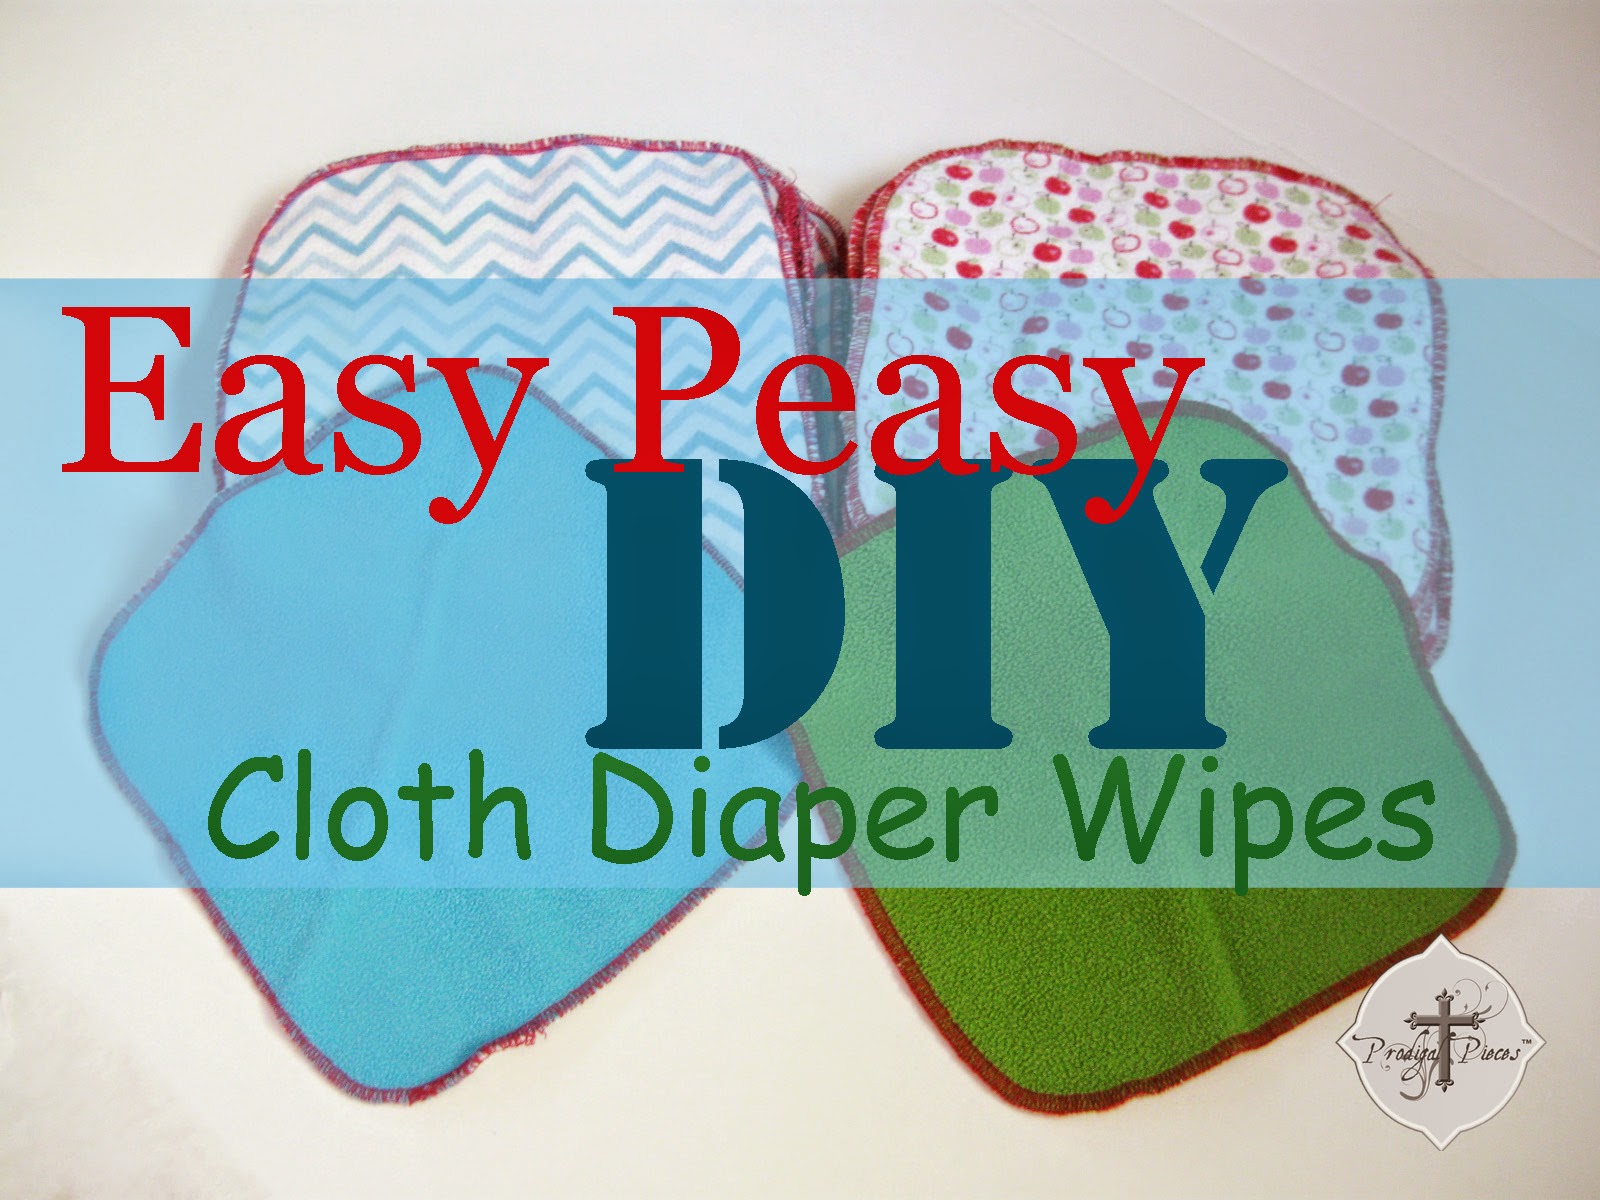 Easy Peasy Cloth Diaper Wipes Tutorial via http://www.prodigalpieces.com